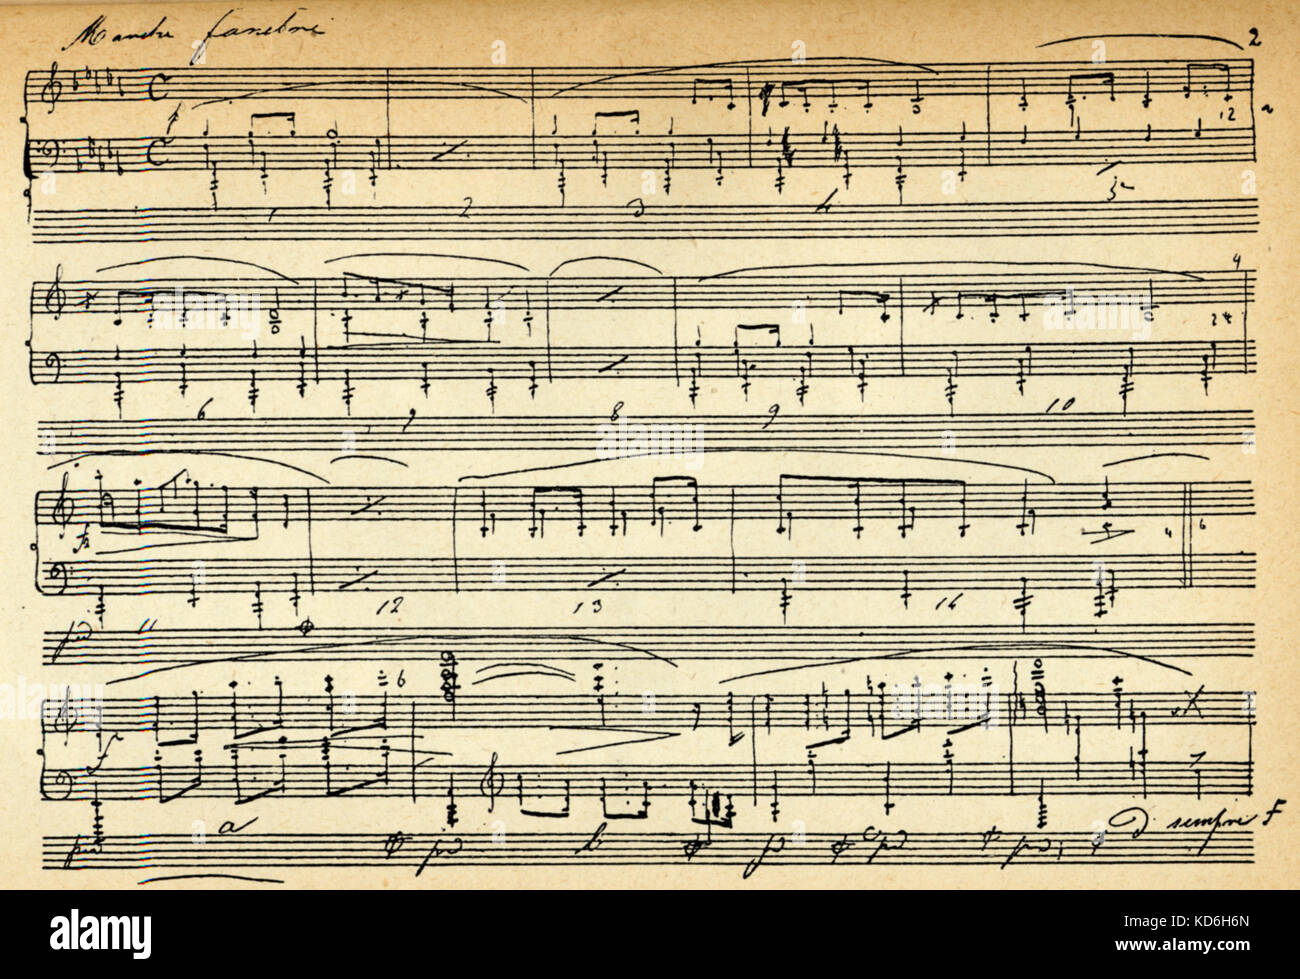 Frédéric Chopin's Funeral March score dans son écriture. Le compositeur polonais, 1810-1849. Banque D'Images